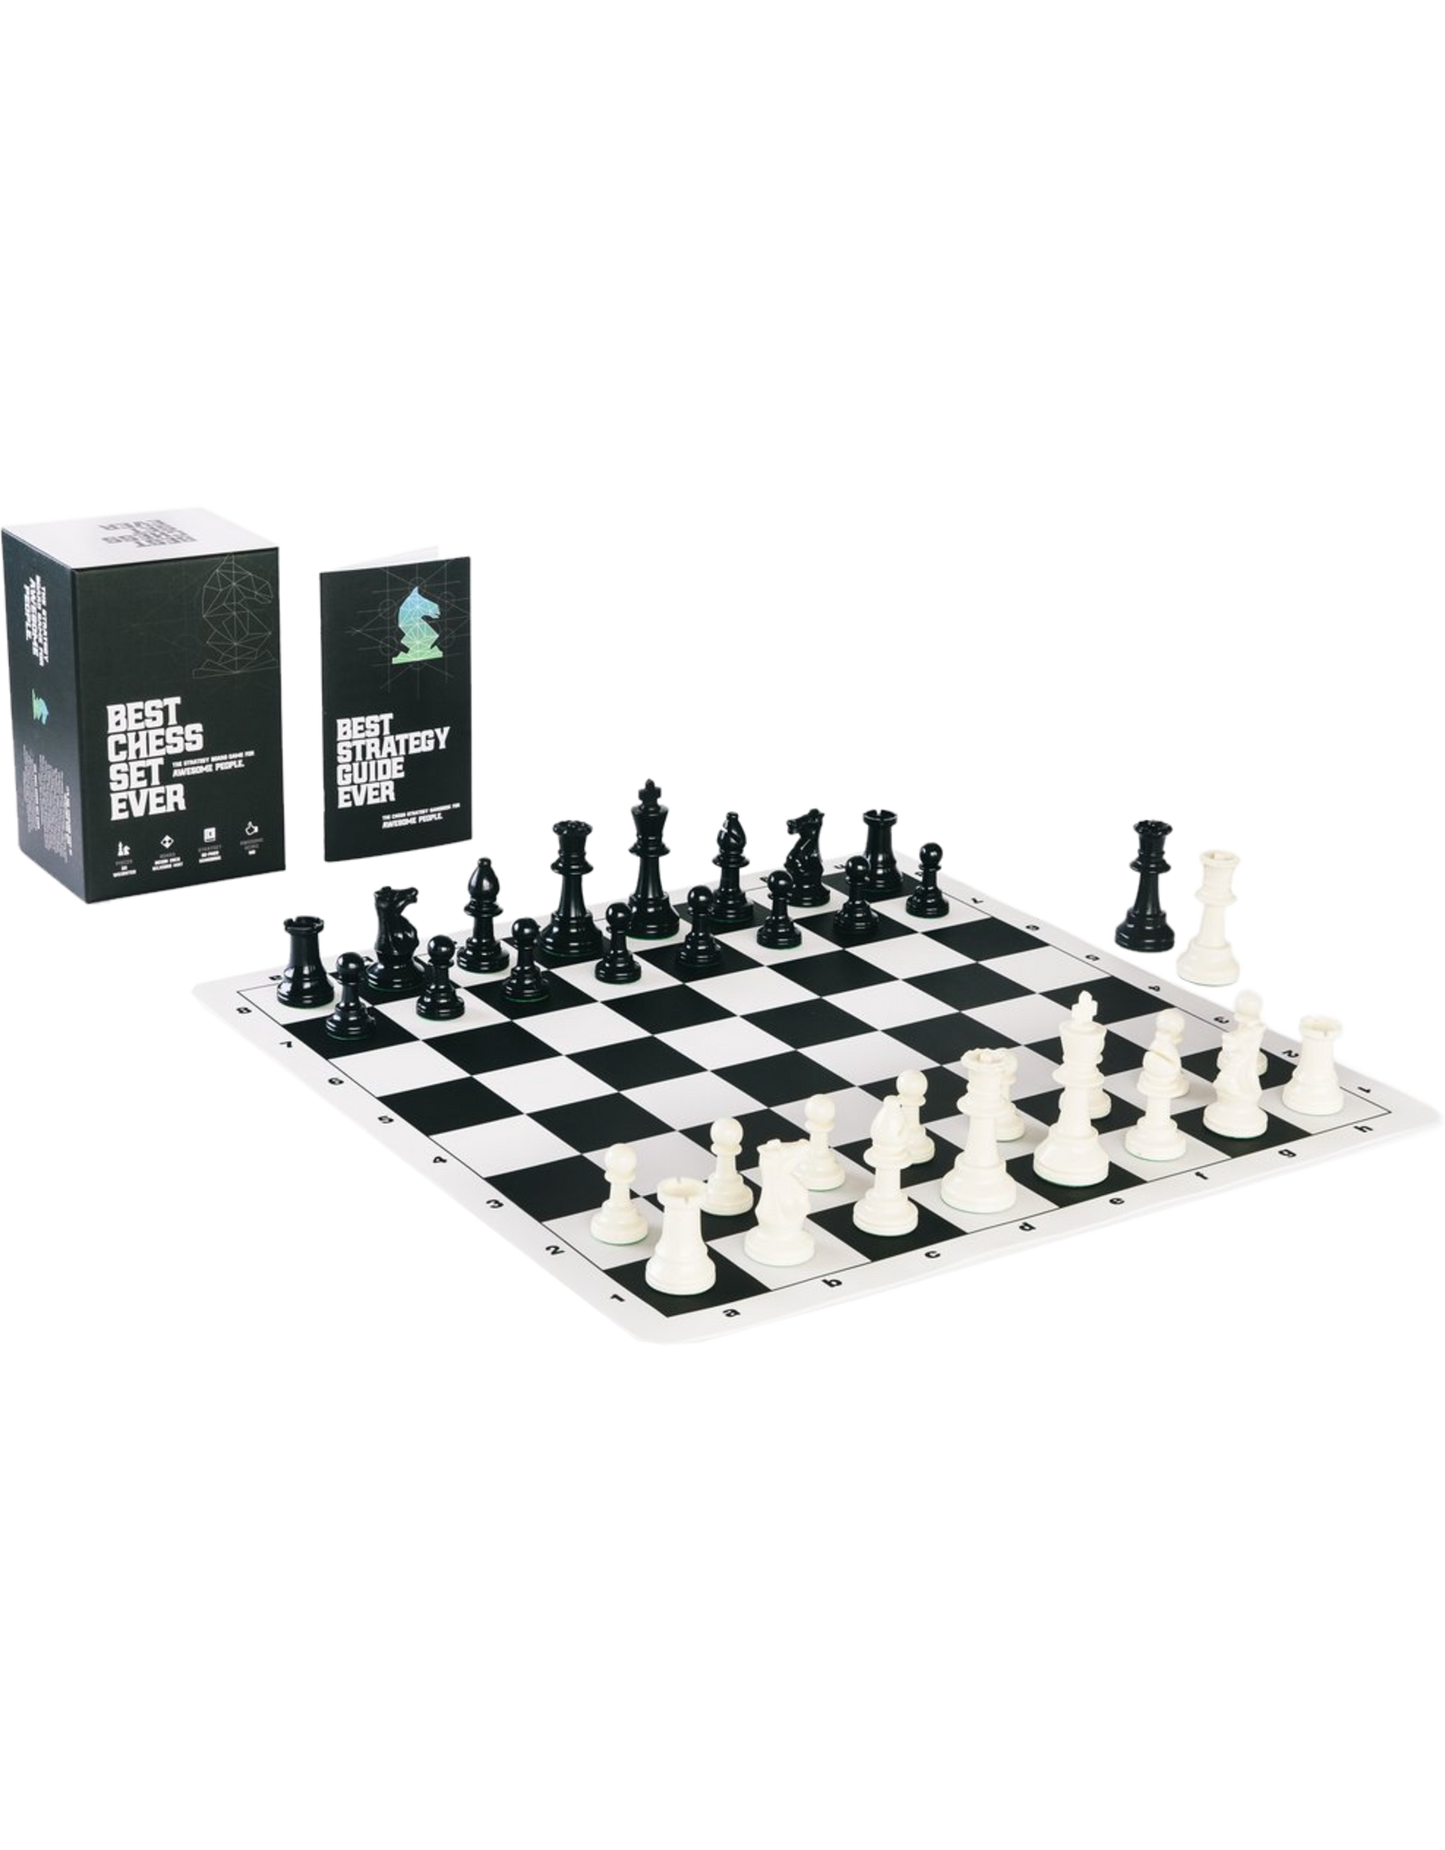 Best Chess Set Ever Green & Black Reversible